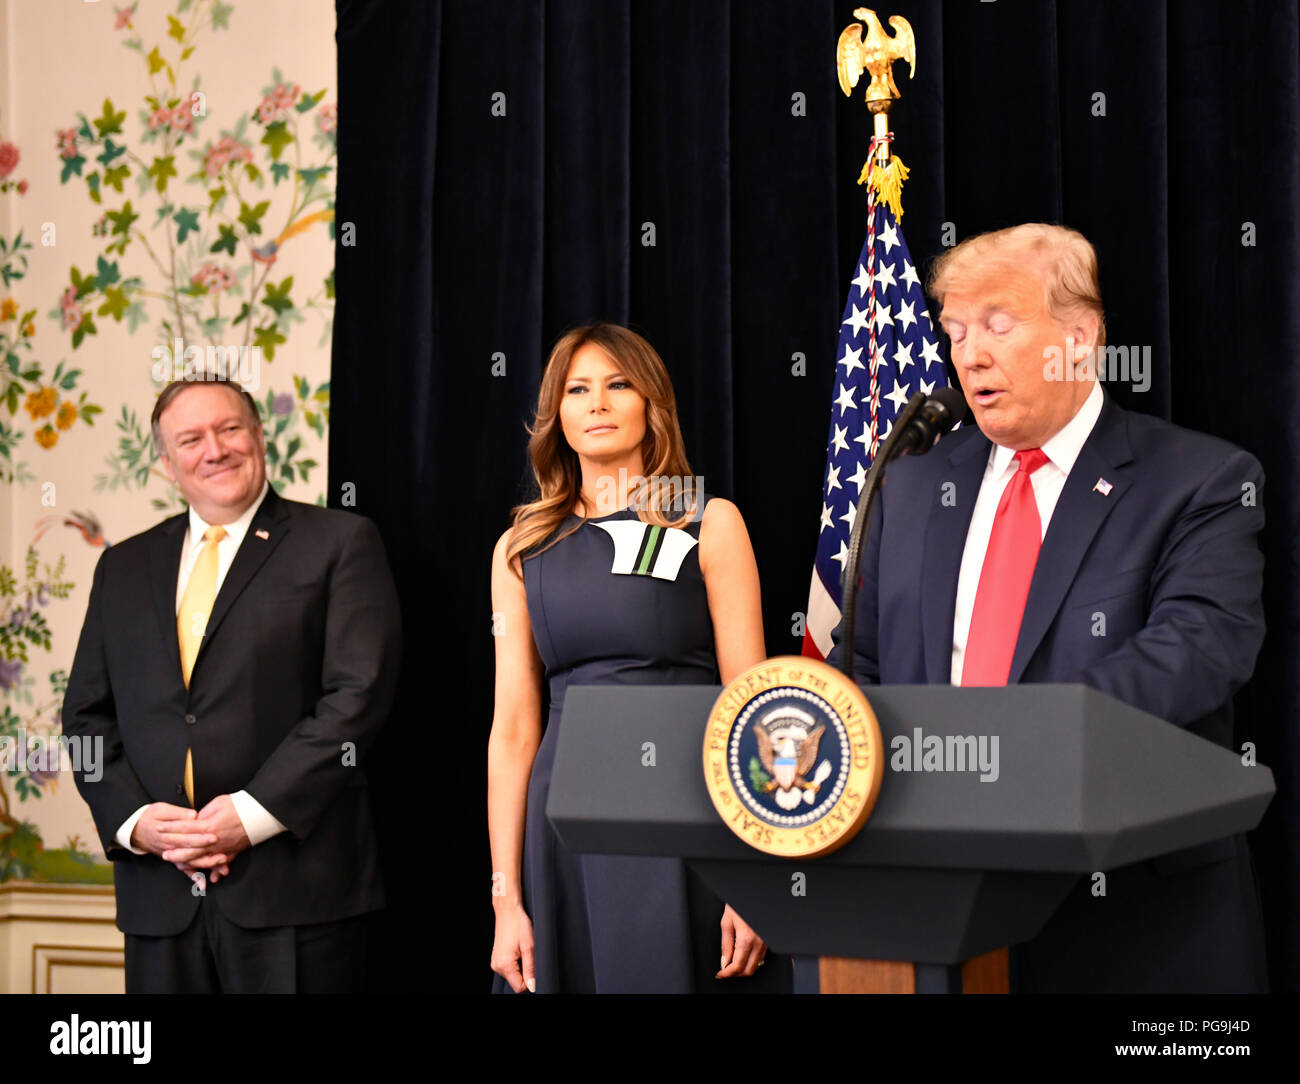 Le président Donald J. Trump flanquée de Première dame Melania Trump et secrétaire d'État des États-Unis, Michael R. Pompeo traite de Tri- Mission Bruxelles lors d'un meet-and-greet à Bruxelles, Belgique le 11 juillet 2018. Banque D'Images